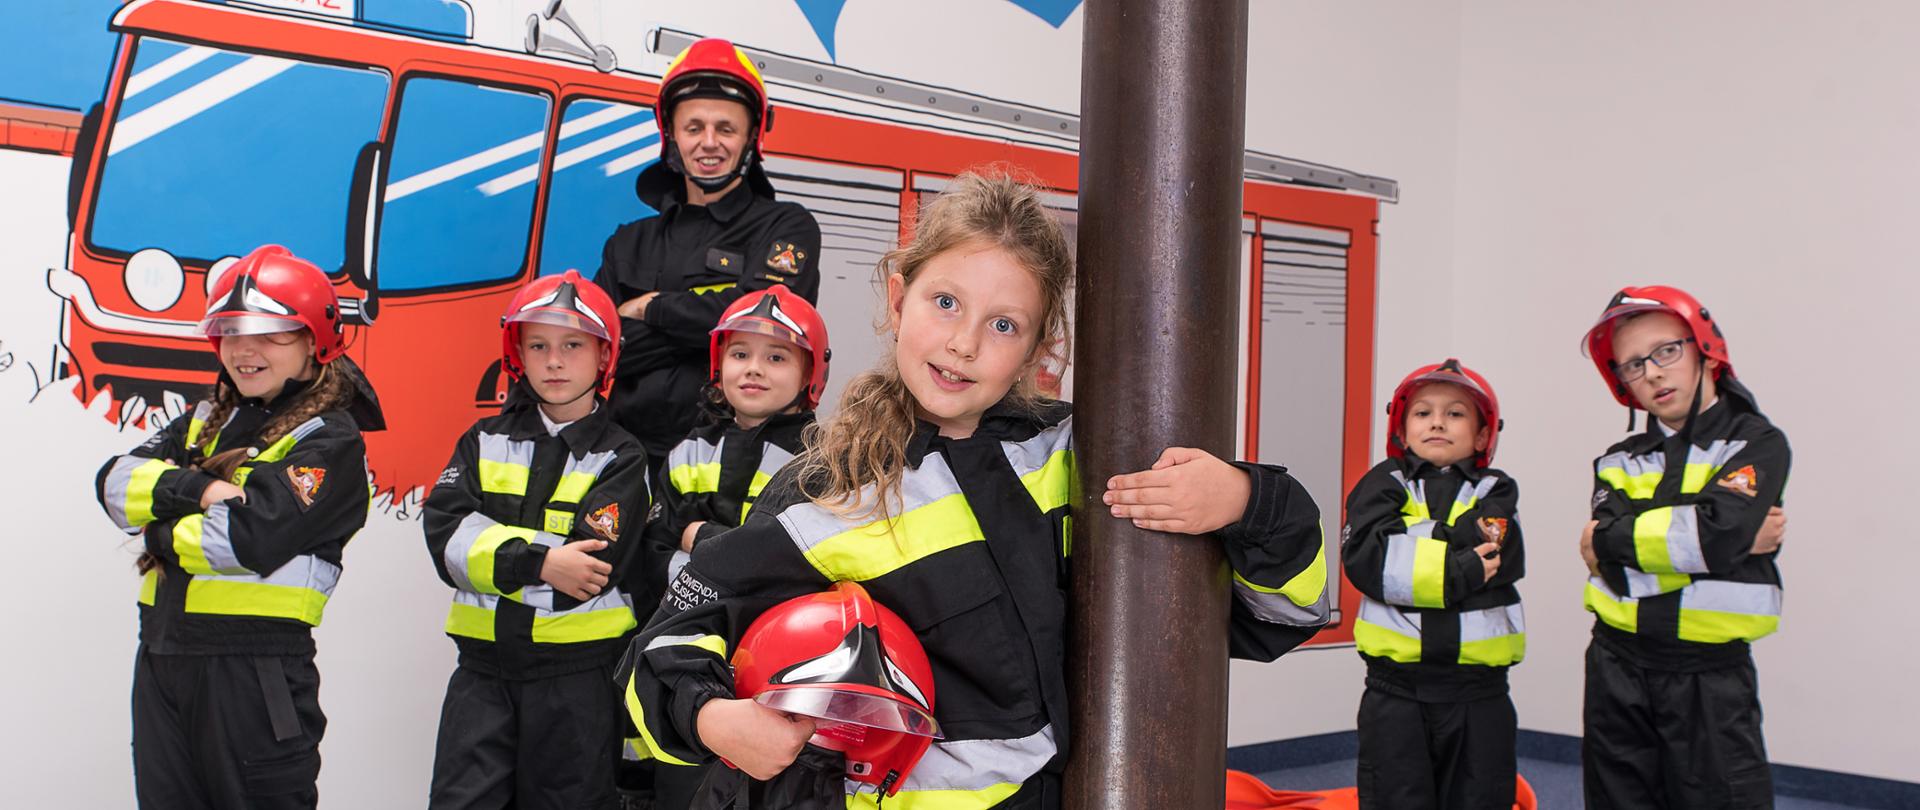 Na zdjęciu przy ześlizgu dziewczynka, za nią pięcioro dzieci i strażak. Wszyscy w mundurach hełmach. W tle na ścianie namalowany samochód strażacki.